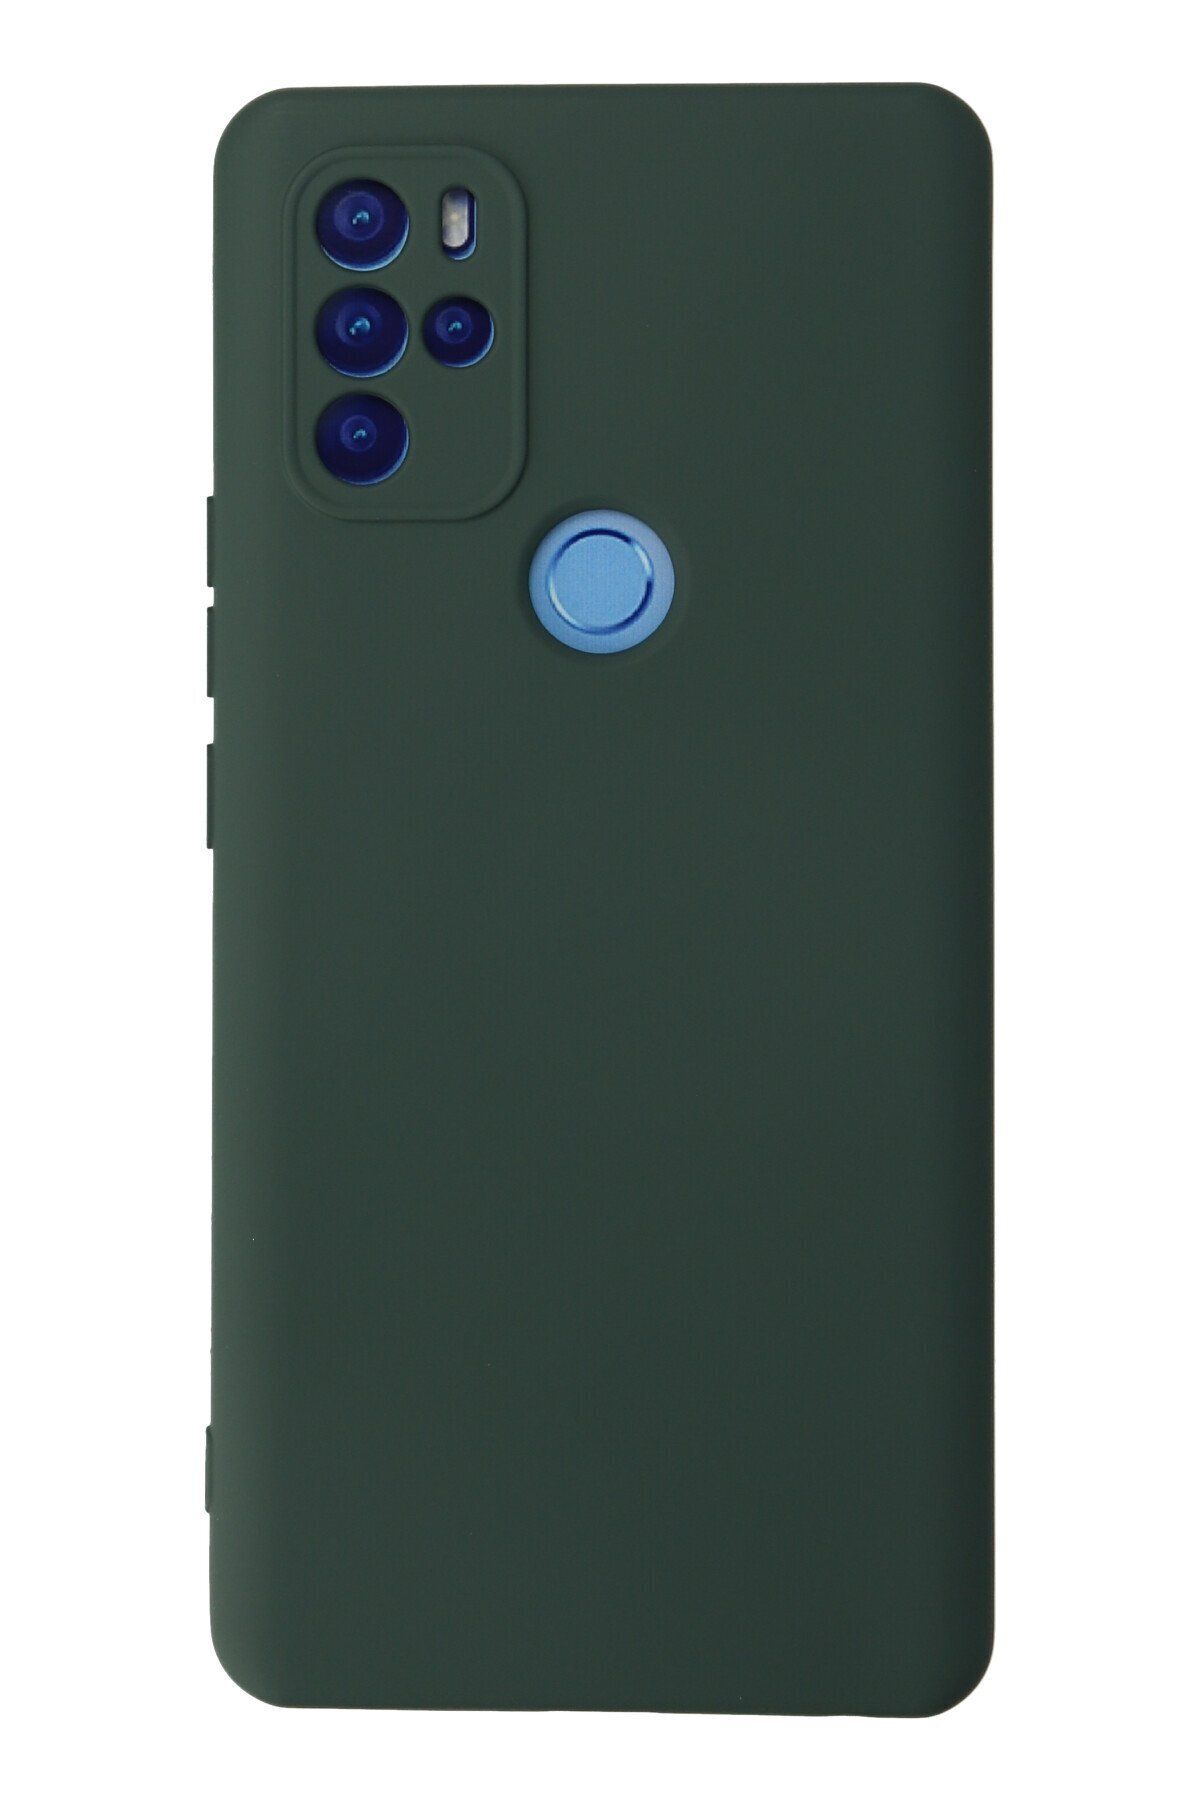 NewFace Omix X300 içi Süet Telefon Kılıfı - Soft Yüzey Kadife Silikon Kapak - Koyu Yeşil